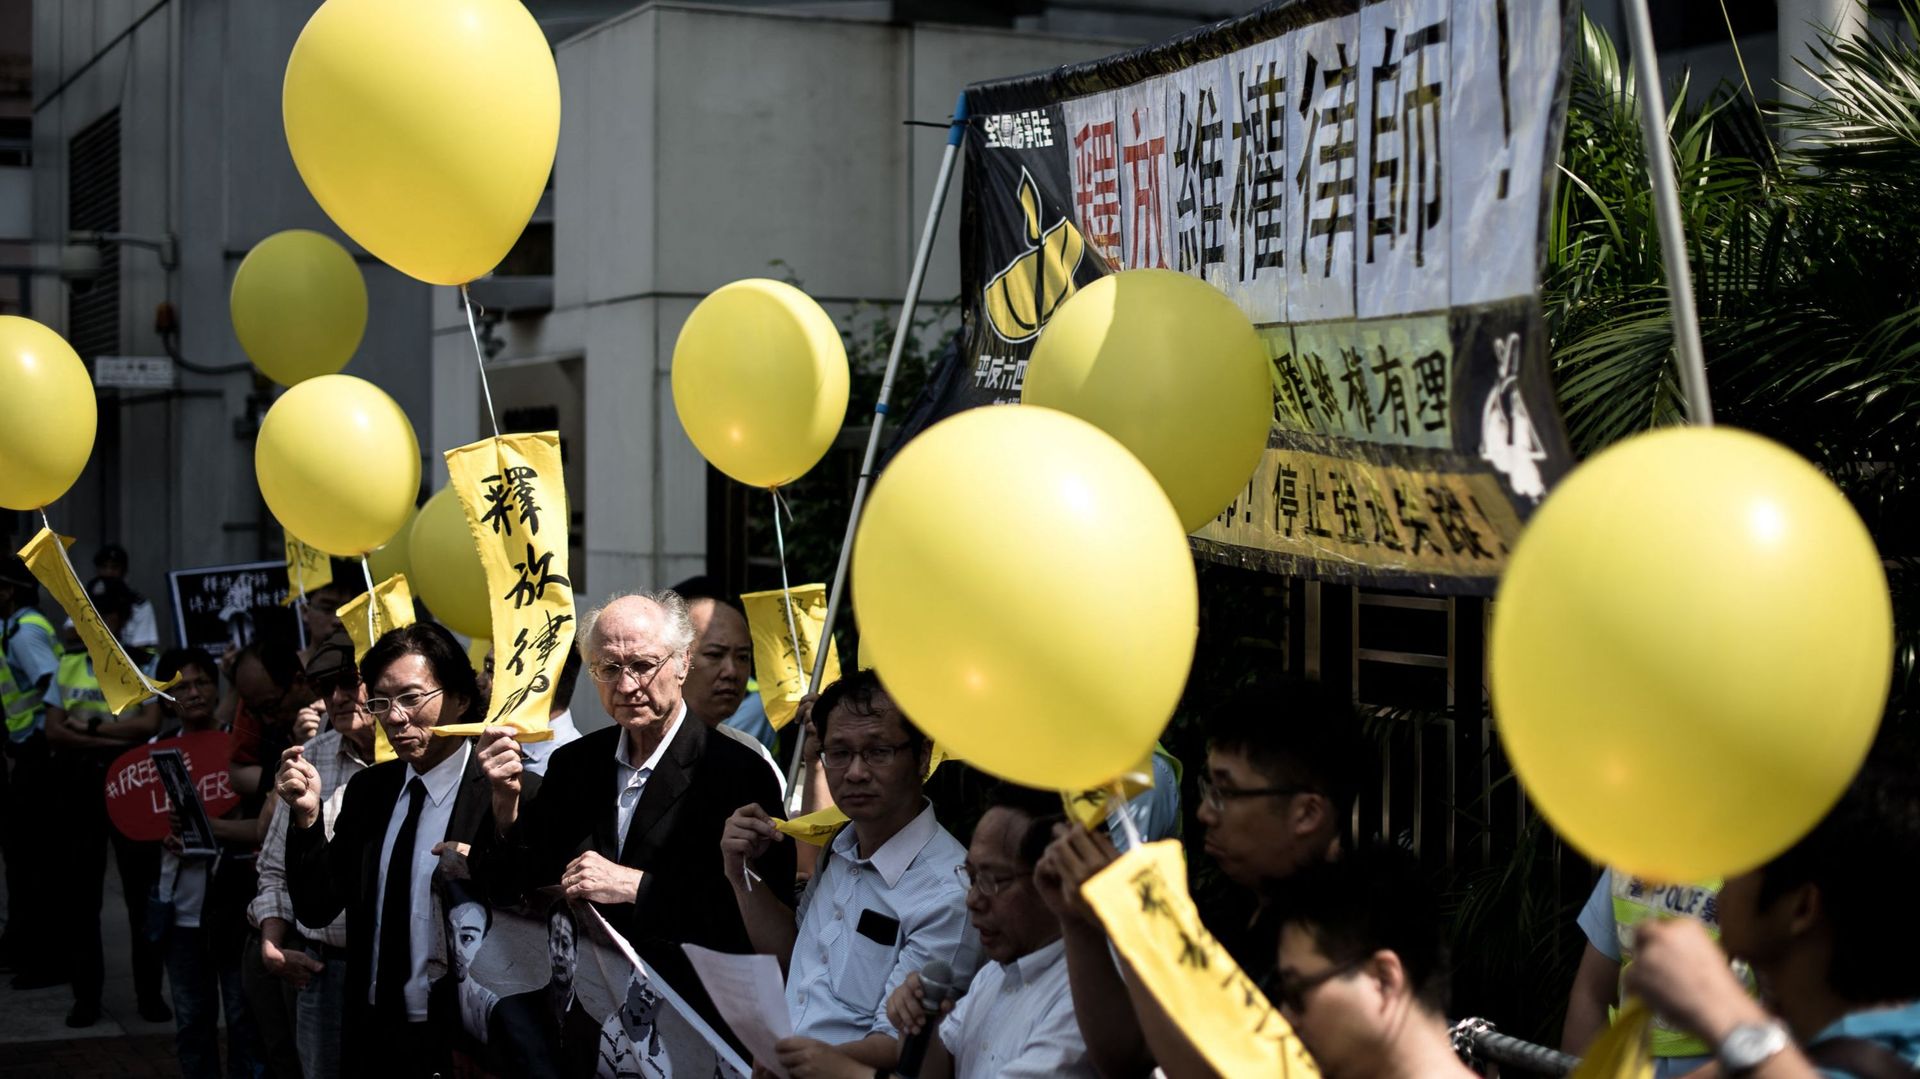 Des avocats et des militants de Hong Kong tenant des ballons jaunes demandent la libération des avocats emprisonnés en Chine continentale, lors d'une manifestation devant le bureau de liaison de la Chine à Hong Kong le 9 octobre 2015